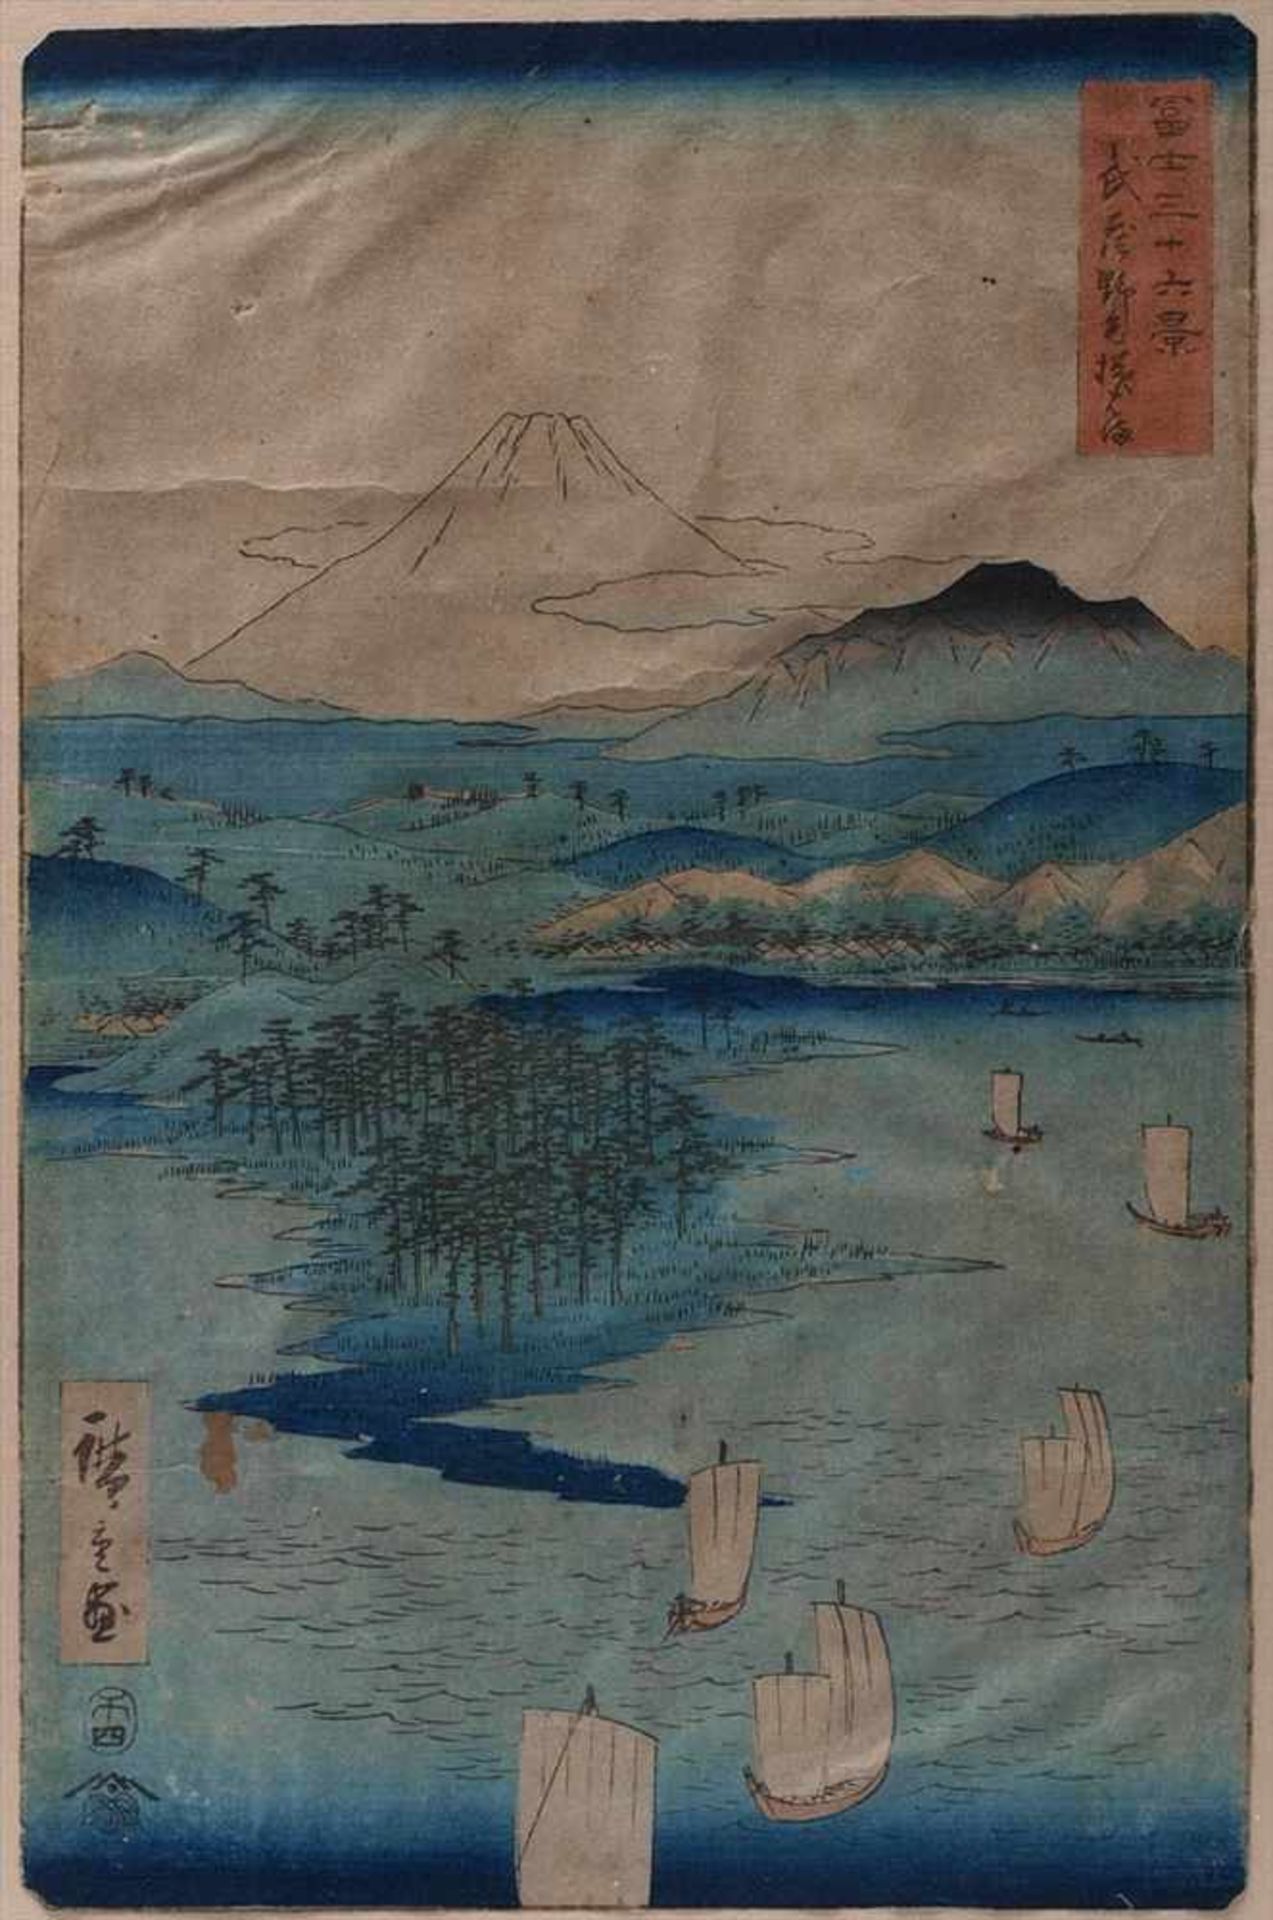 Farbholzschnitt, Japan, 19.Jhdt.Wohl Hiroshige I oder II. Weite Seenlandschaft mit Fischerbooten und - Bild 2 aus 4